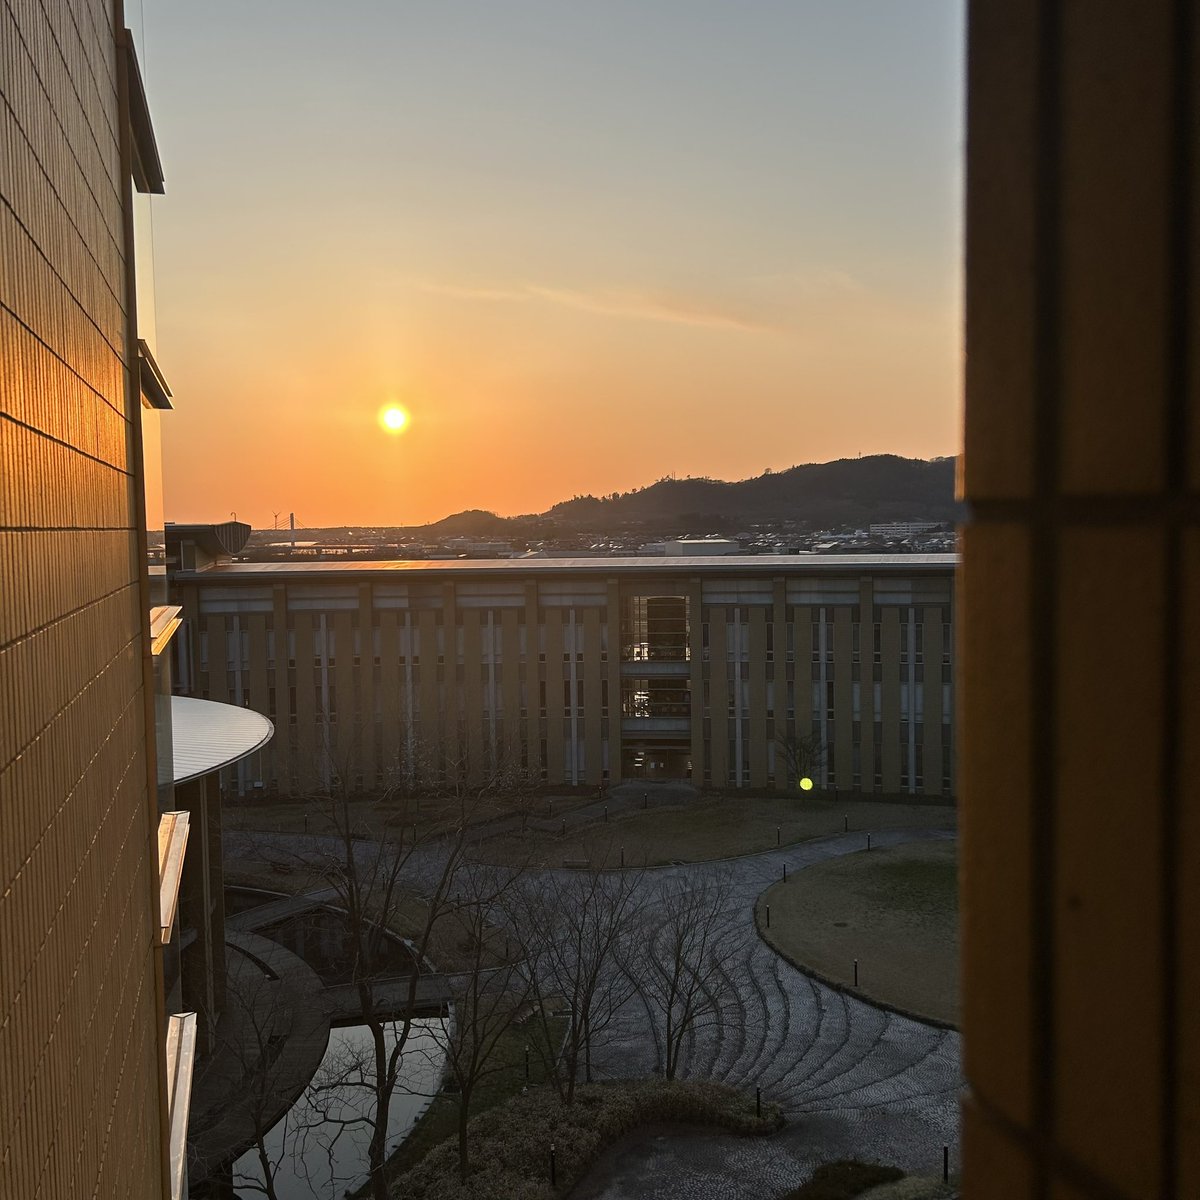 今日は本荘キャンパスで講義でした。夕陽が眩しい季節になってきました。
#秋田県立大学 #本荘キャンパス